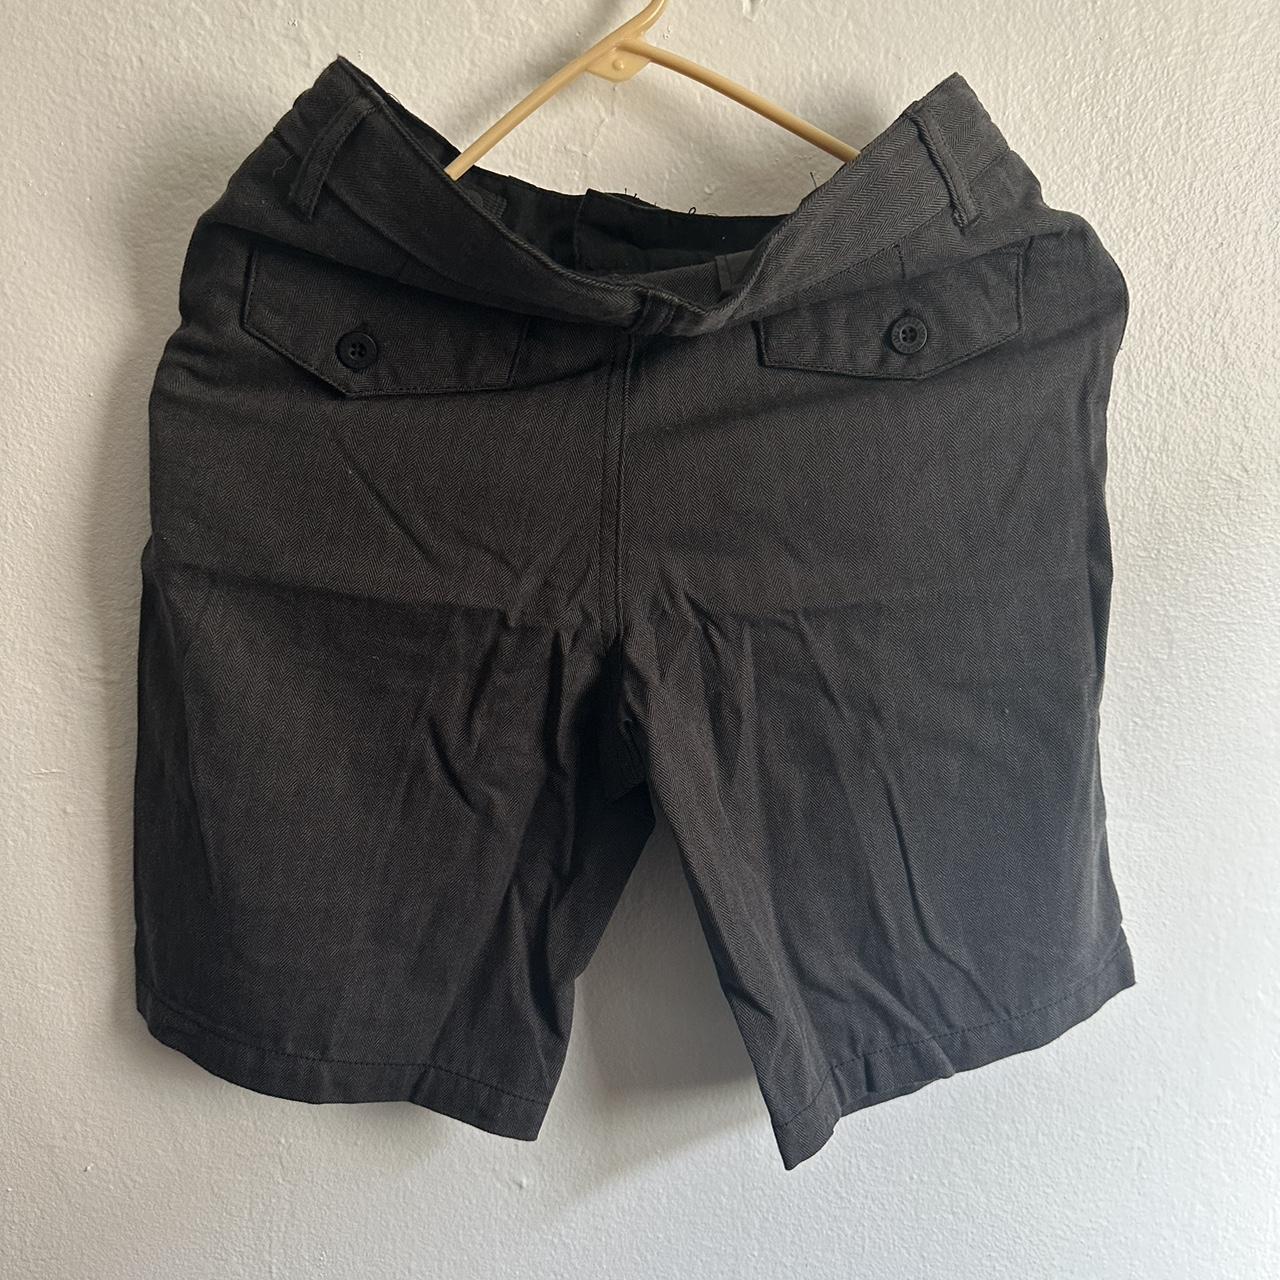 Grey and Black Shorts (4)